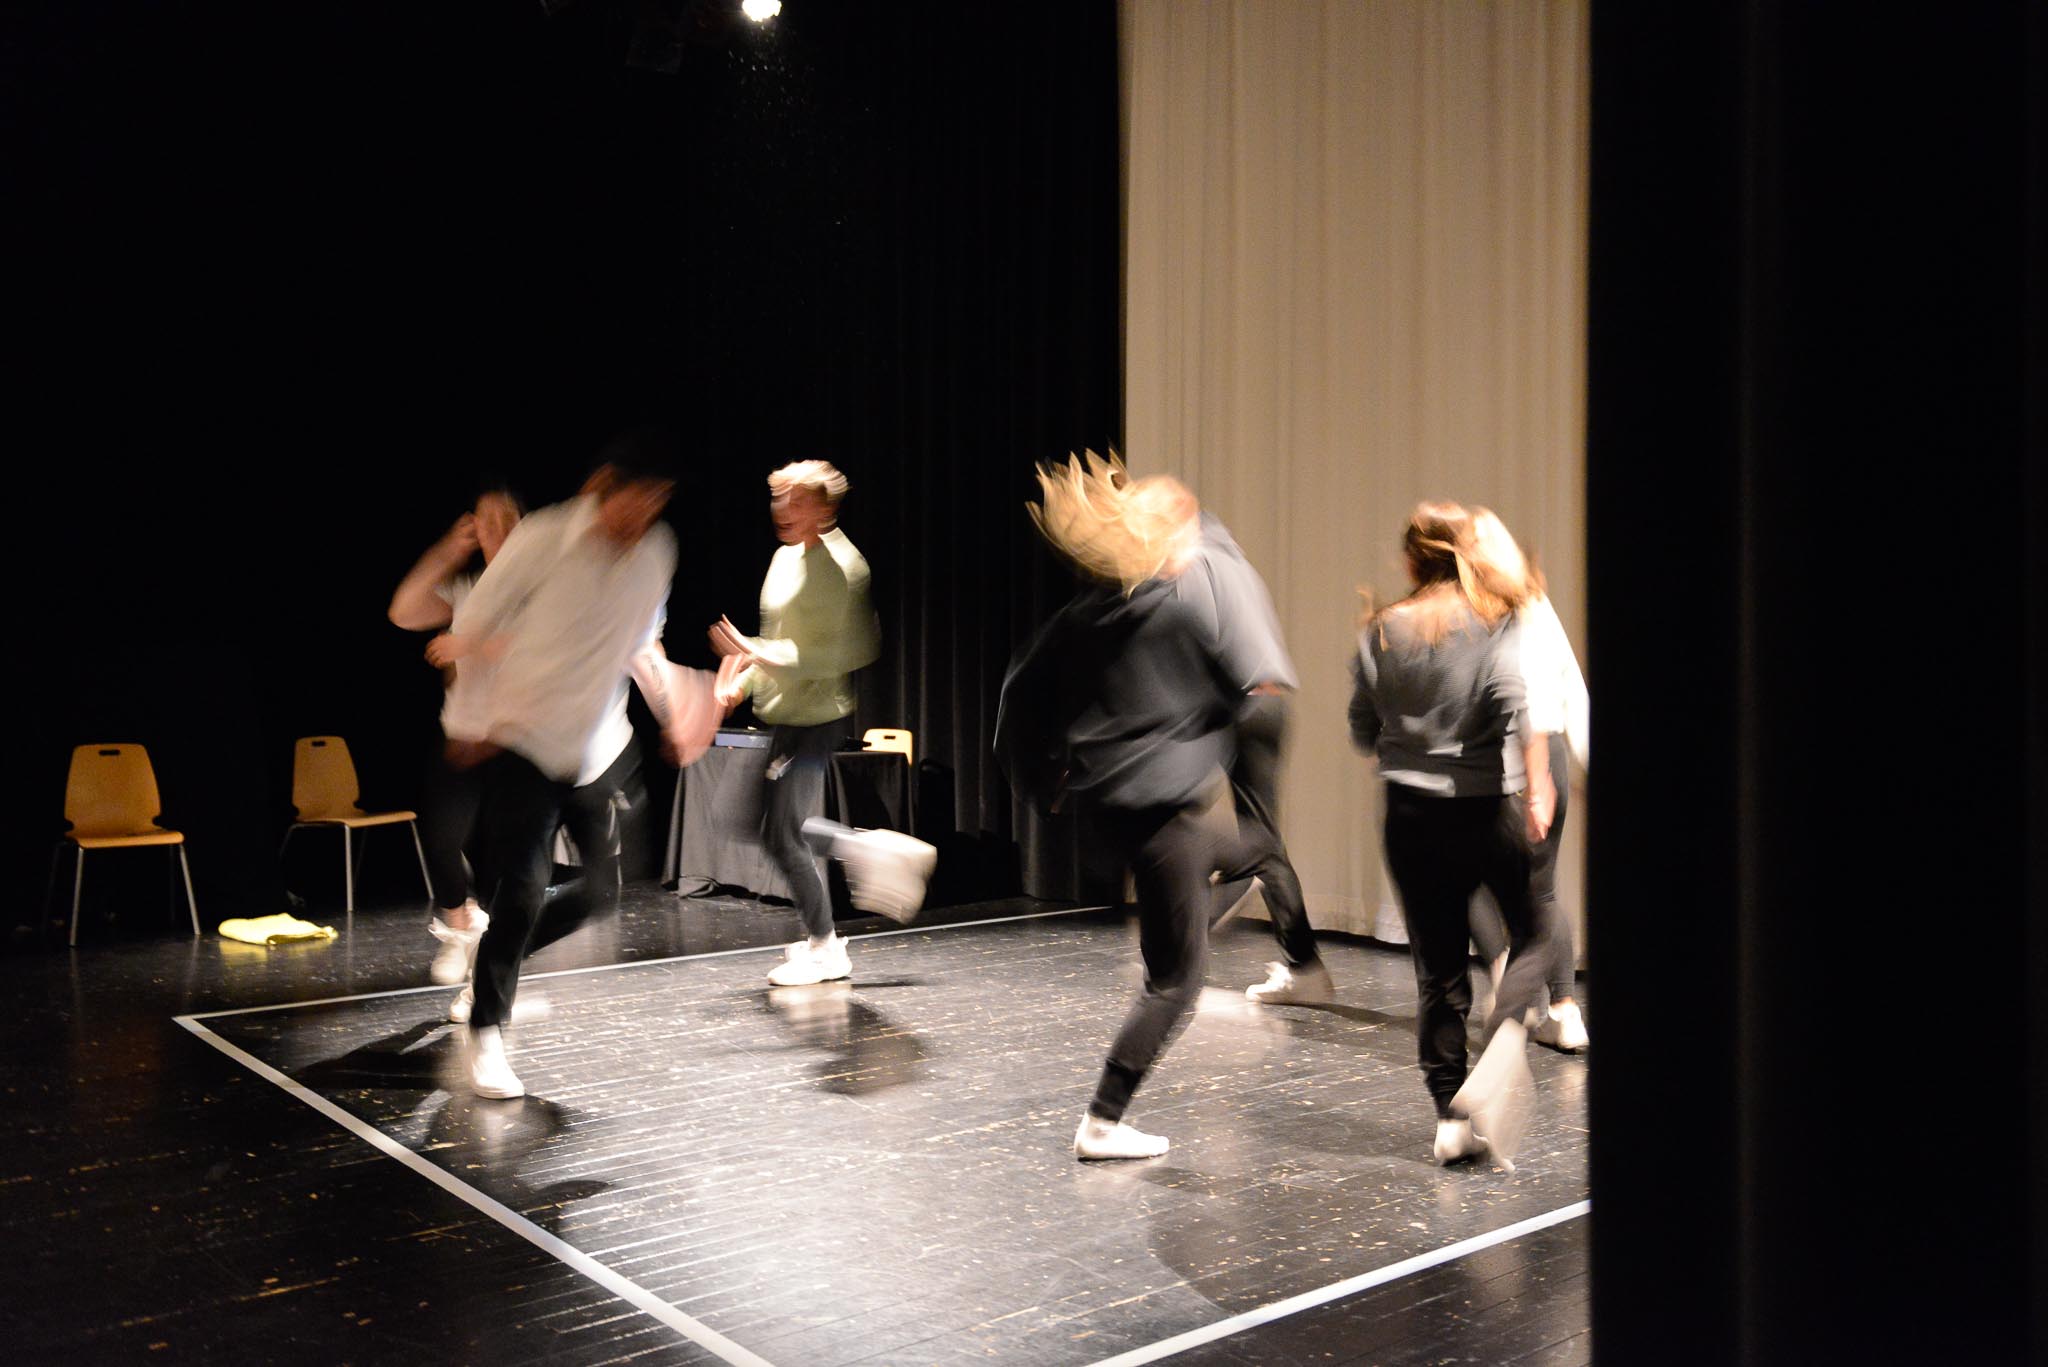 En gruppe personer danser på en scene.